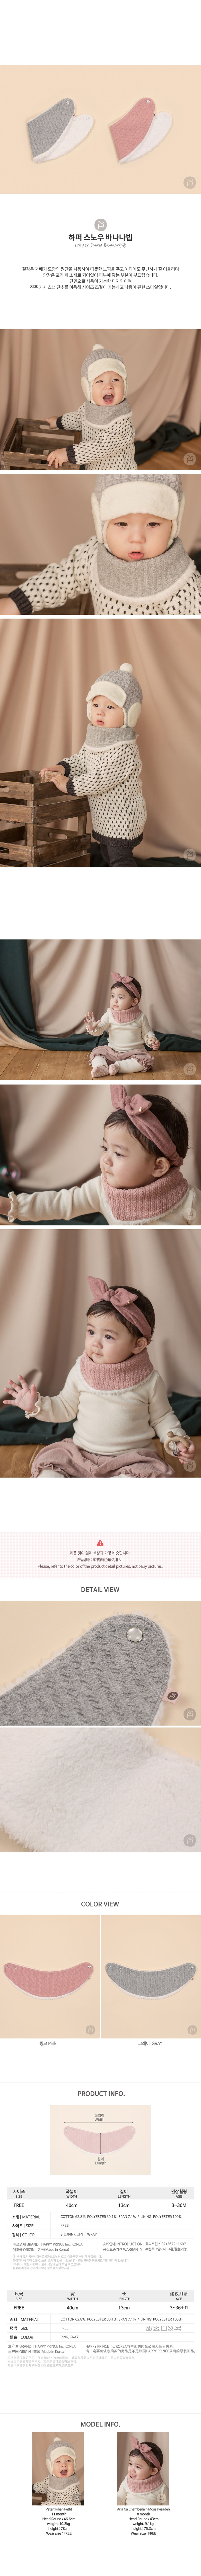 韓國 Happy Prince Harper保暖嬰兒童圍脖圍巾圍兜 粉紅色